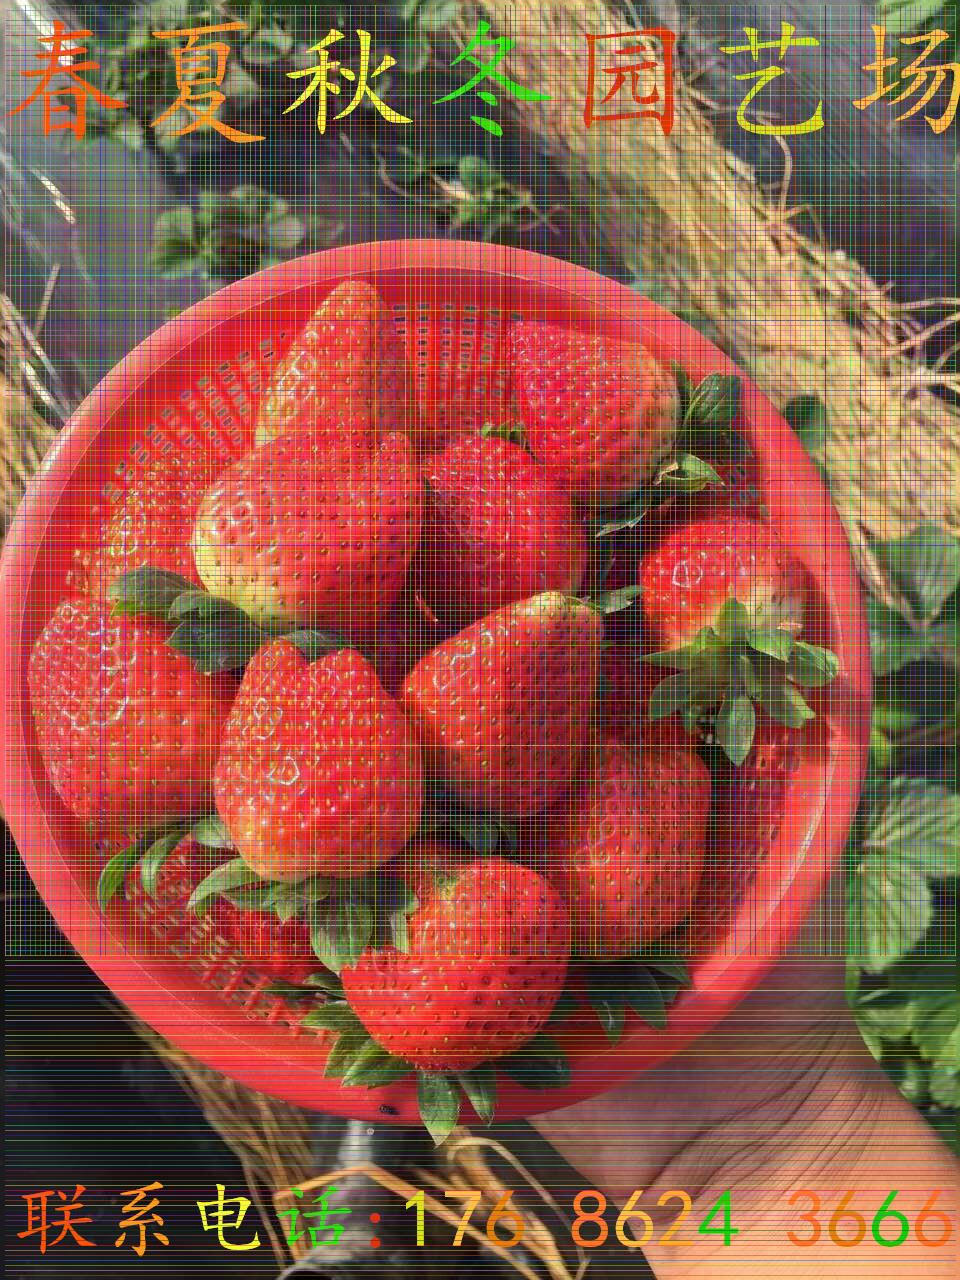 渝北新星1号草莓苗哪里有卖的一株多少钱